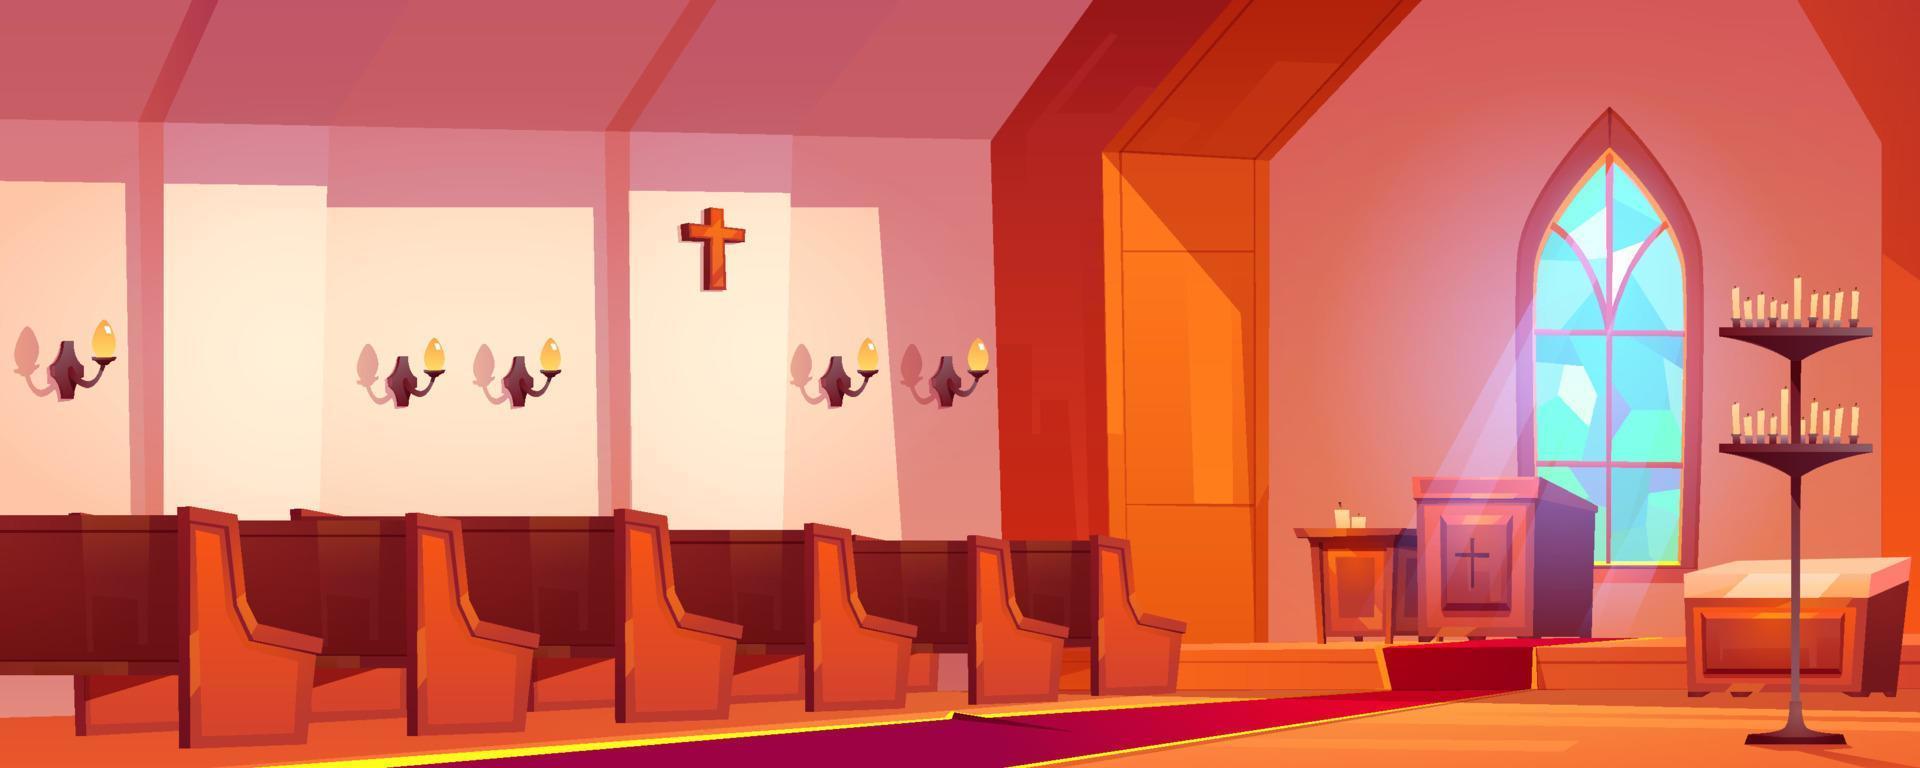 interior de la iglesia católica con altar y bancos vector